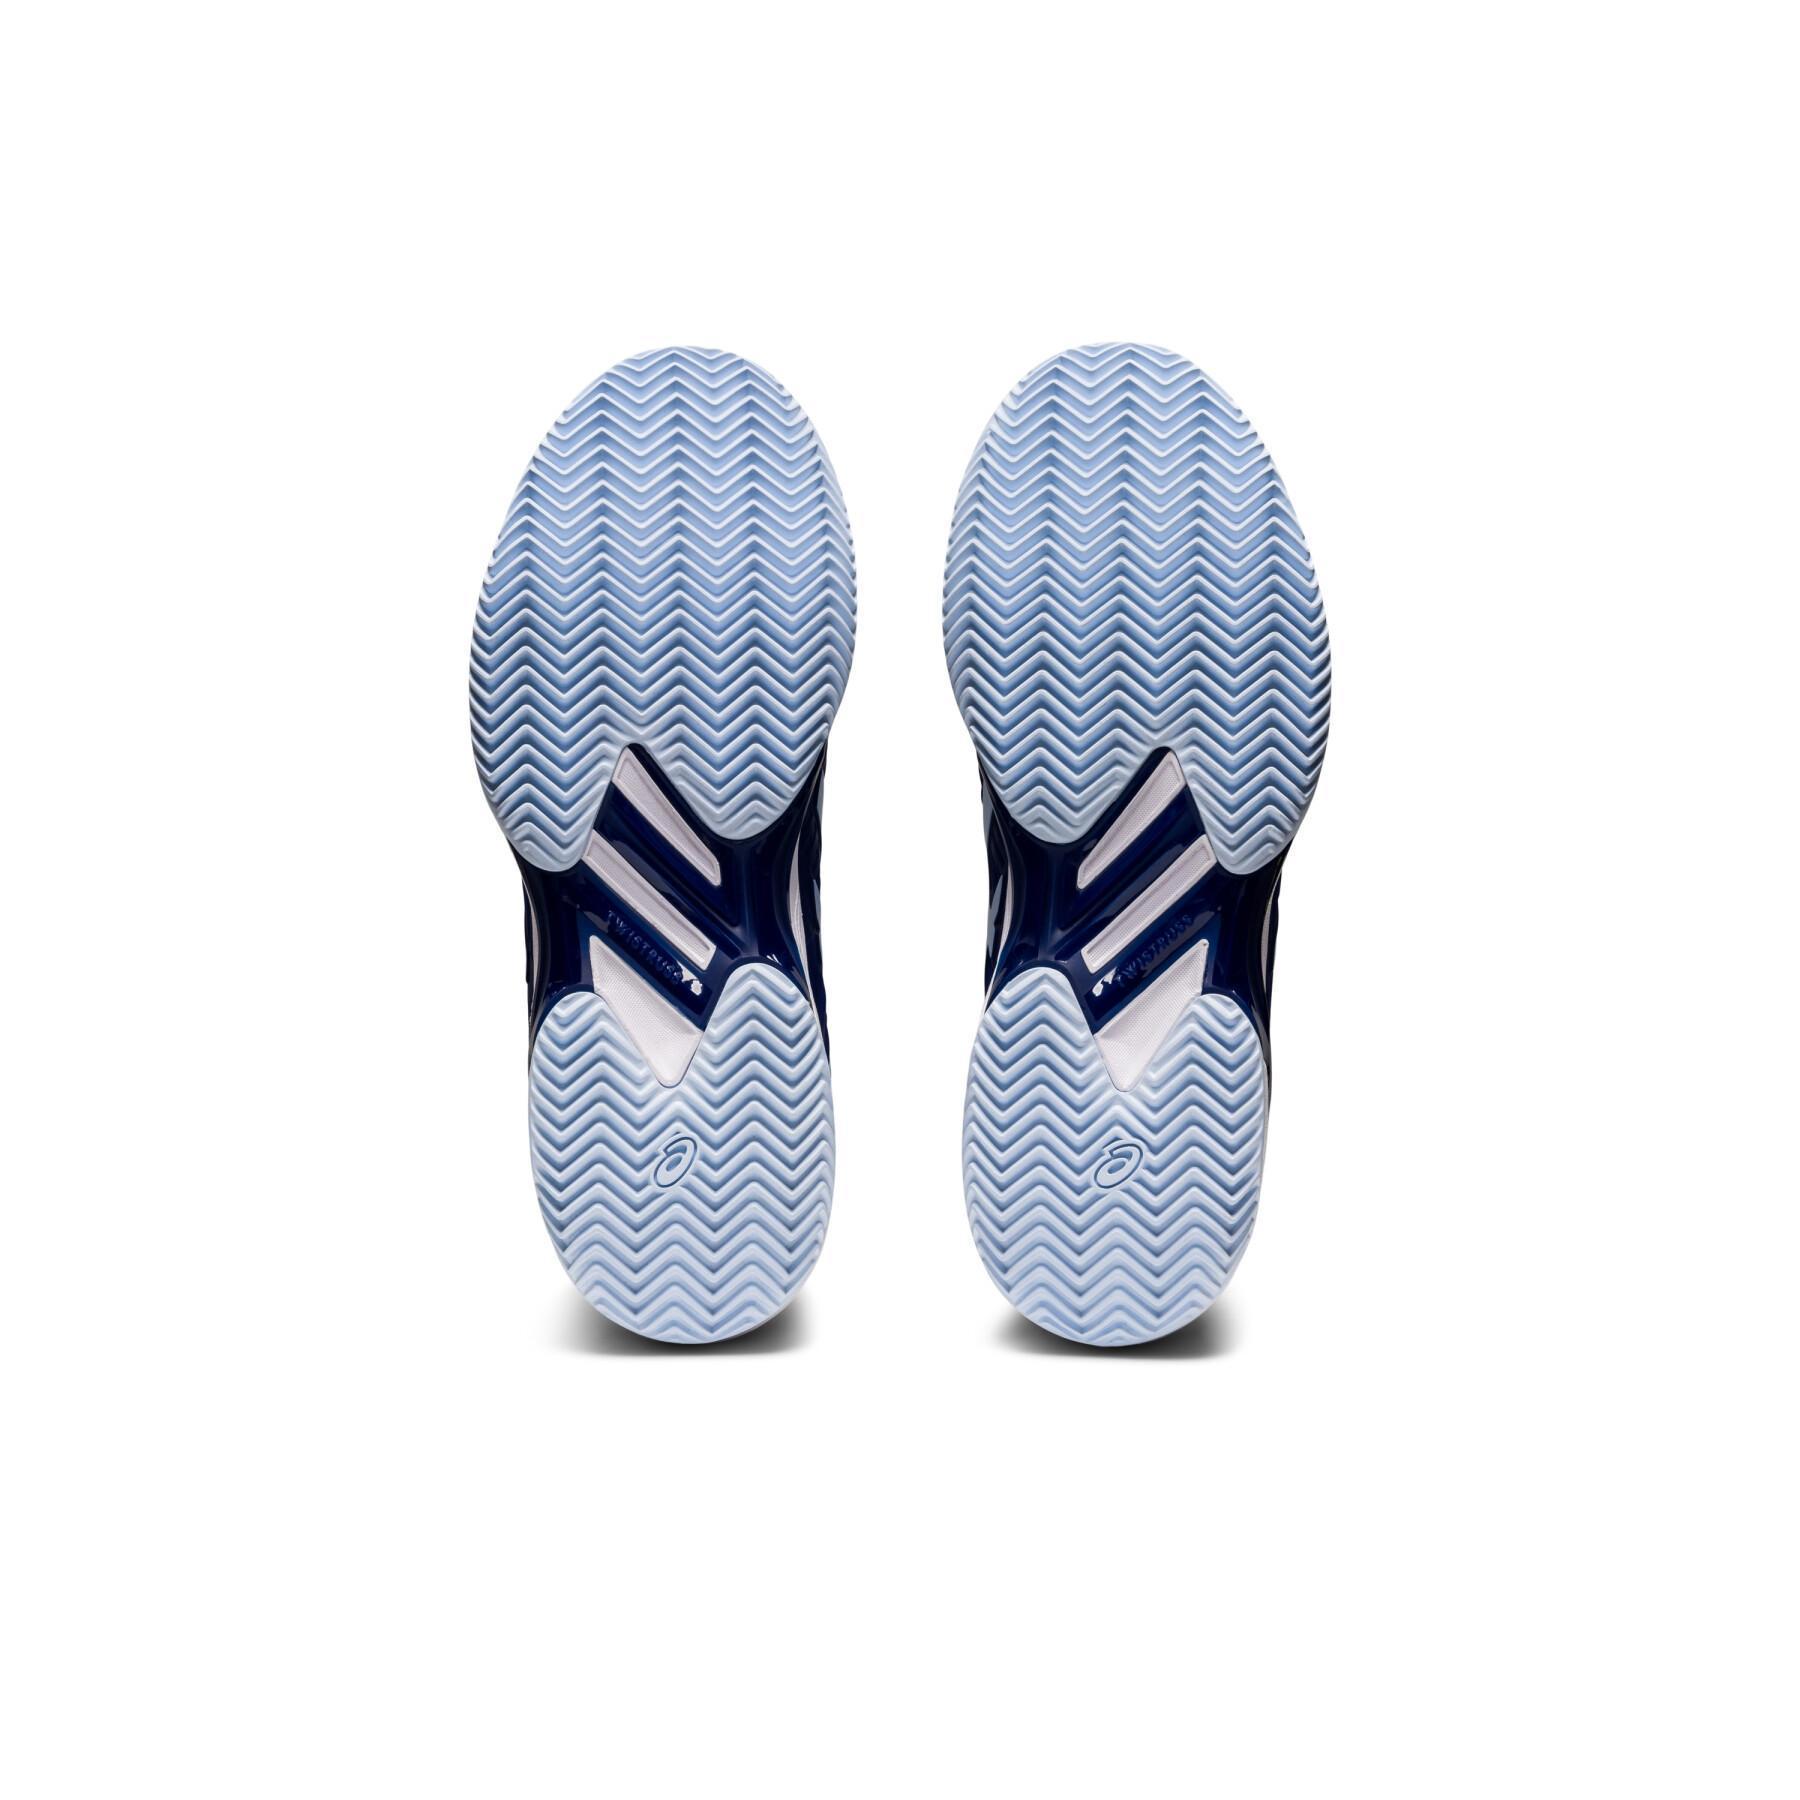 Zapatillas de tenis para mujer Asics Solution speed FF 2 clay